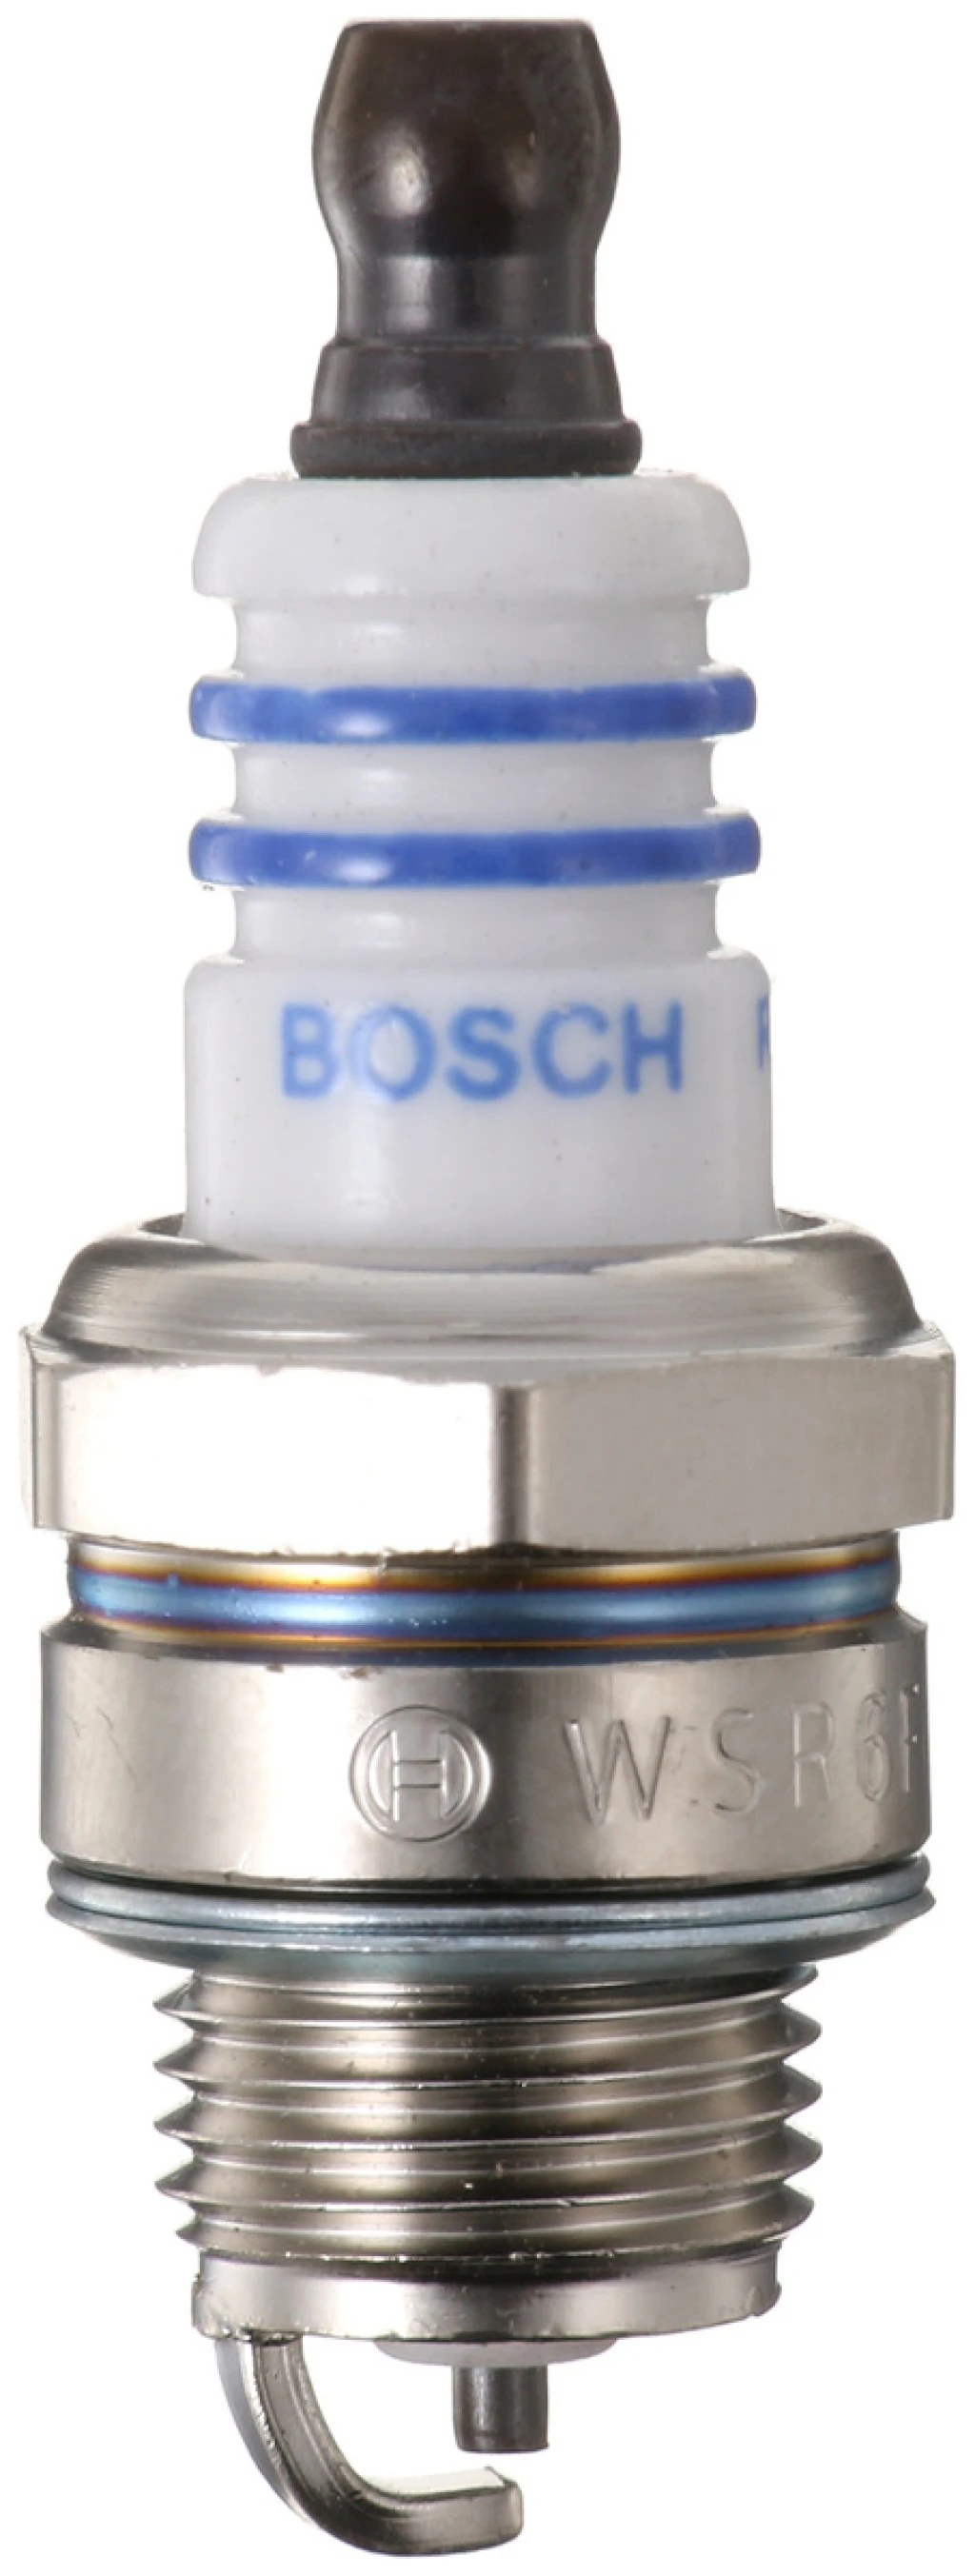 Свеча зажигания Bosch 0 242 240 506 (WSR6F 0.5)